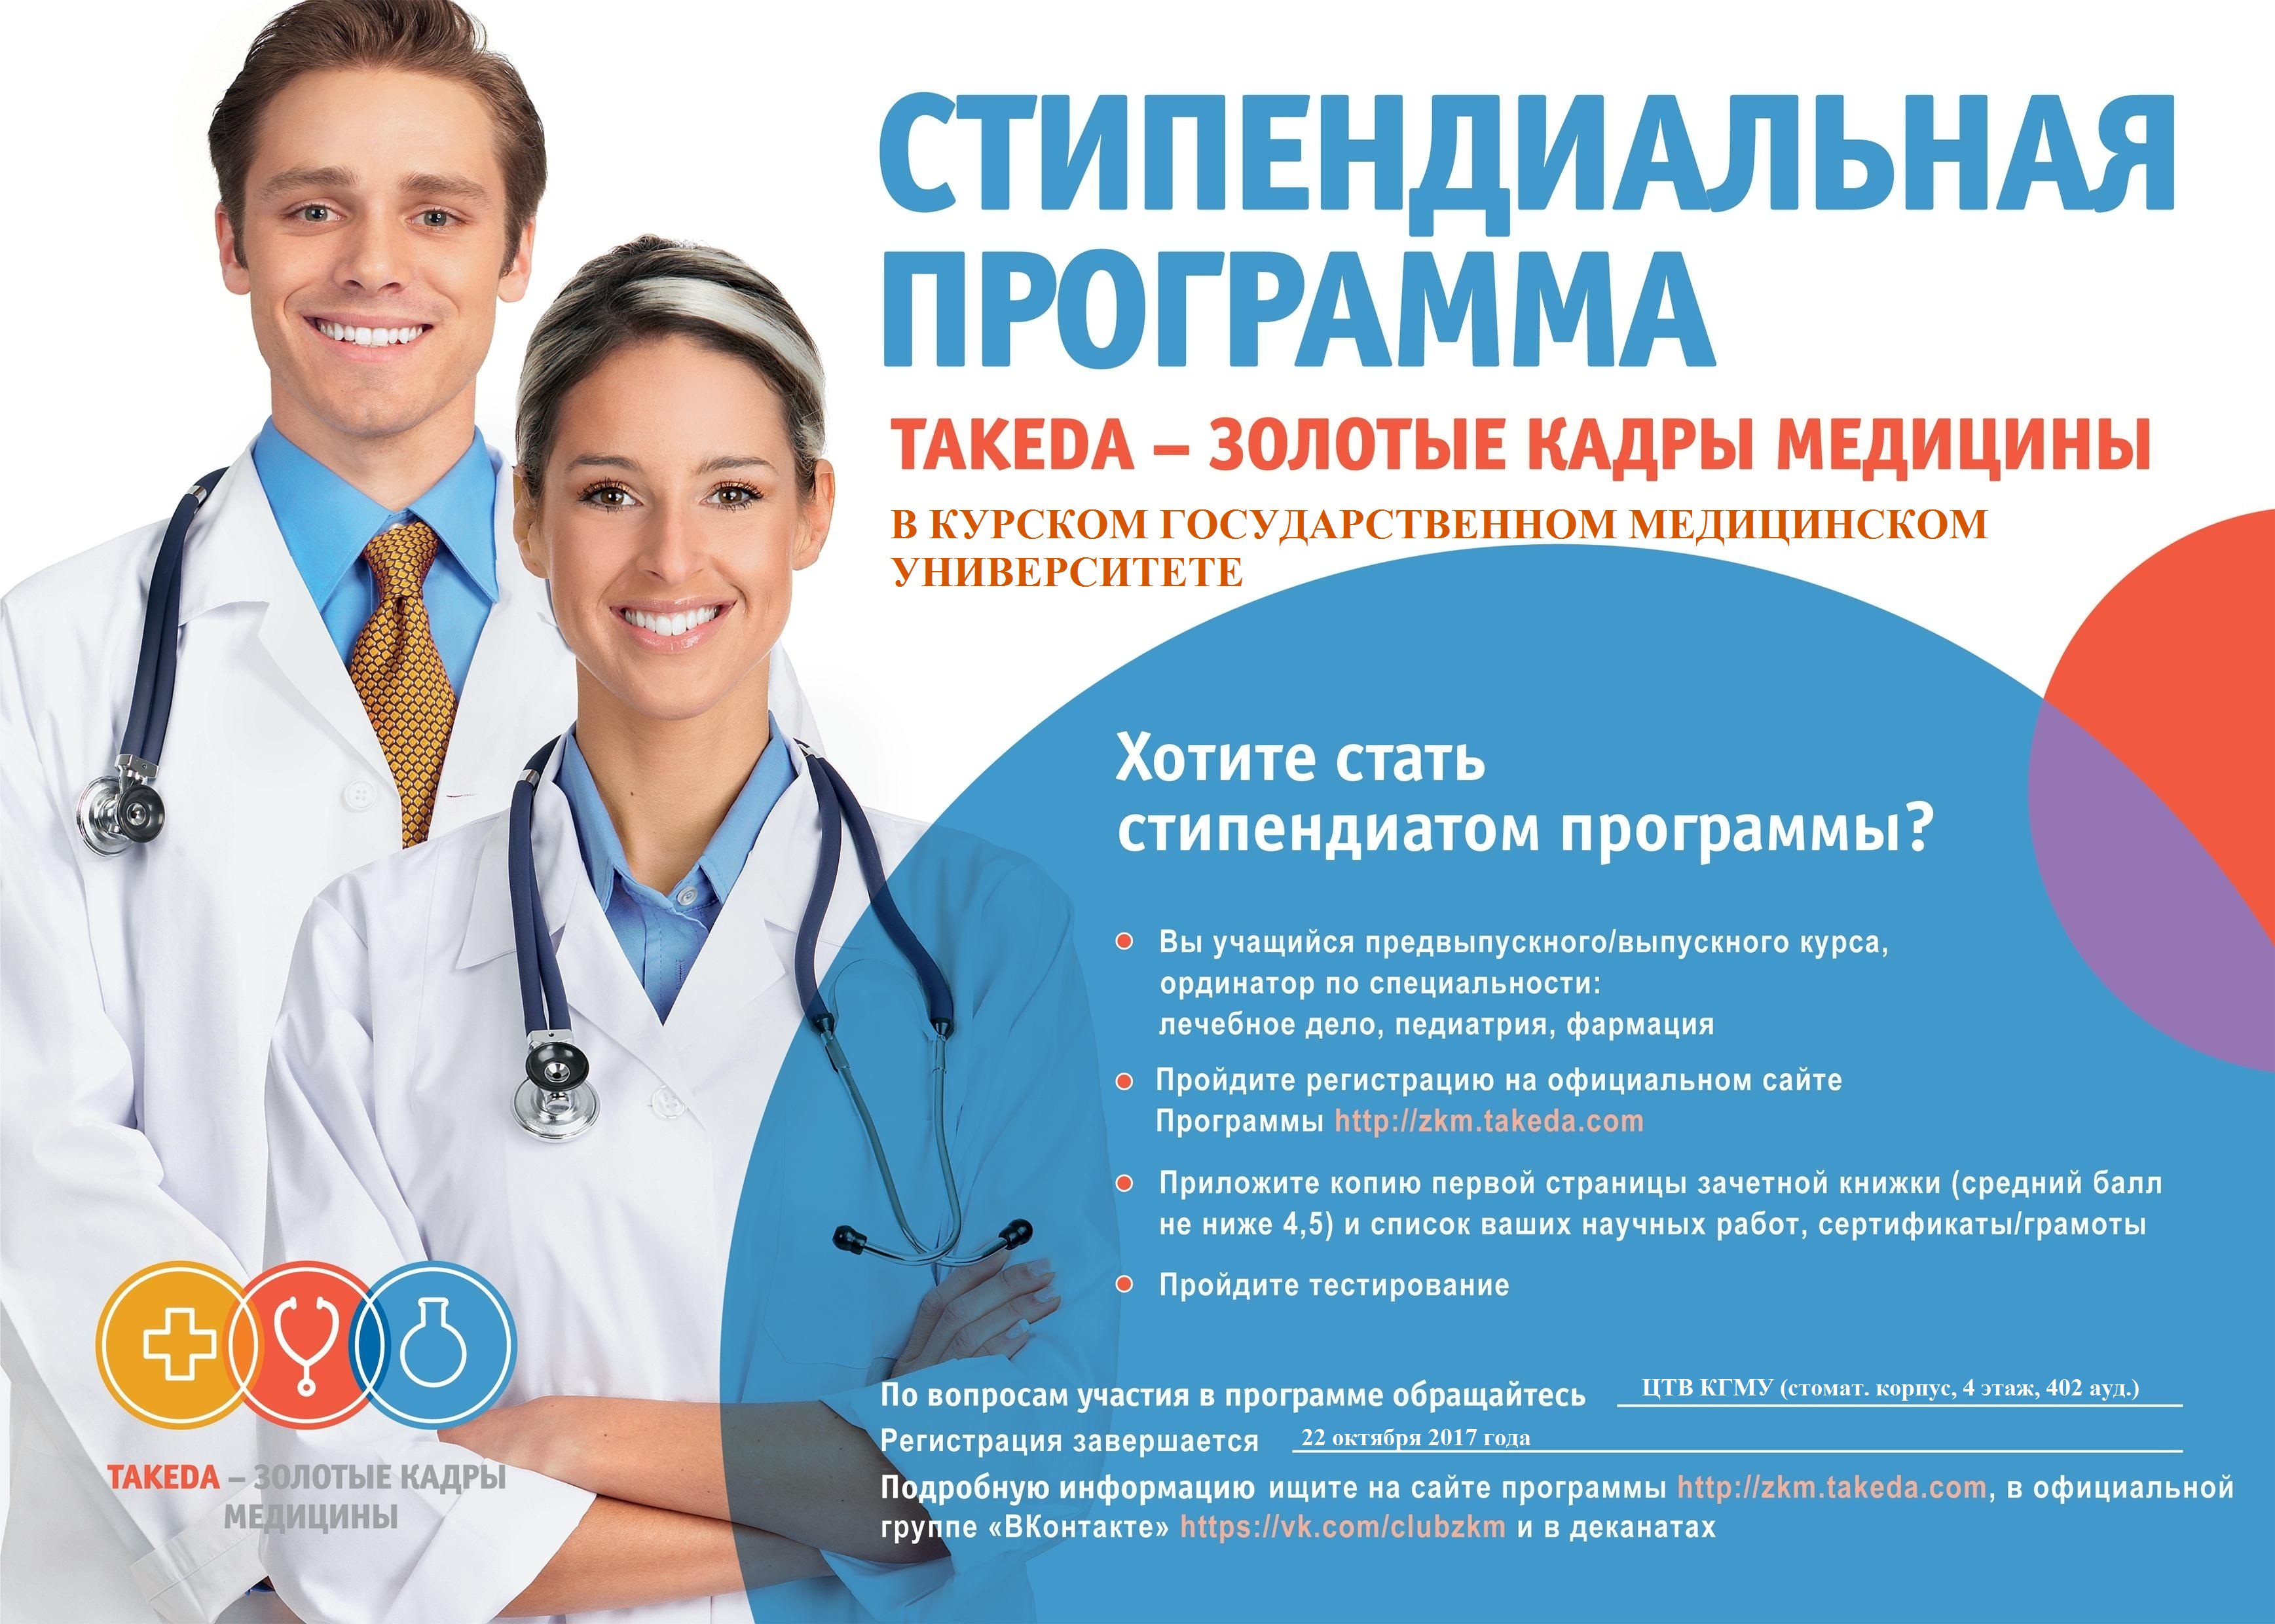 Медицинское образование педиатрия. Стипендиальная программа. Медицина реклама. Реклама медицинского вуза. Программа медицина.